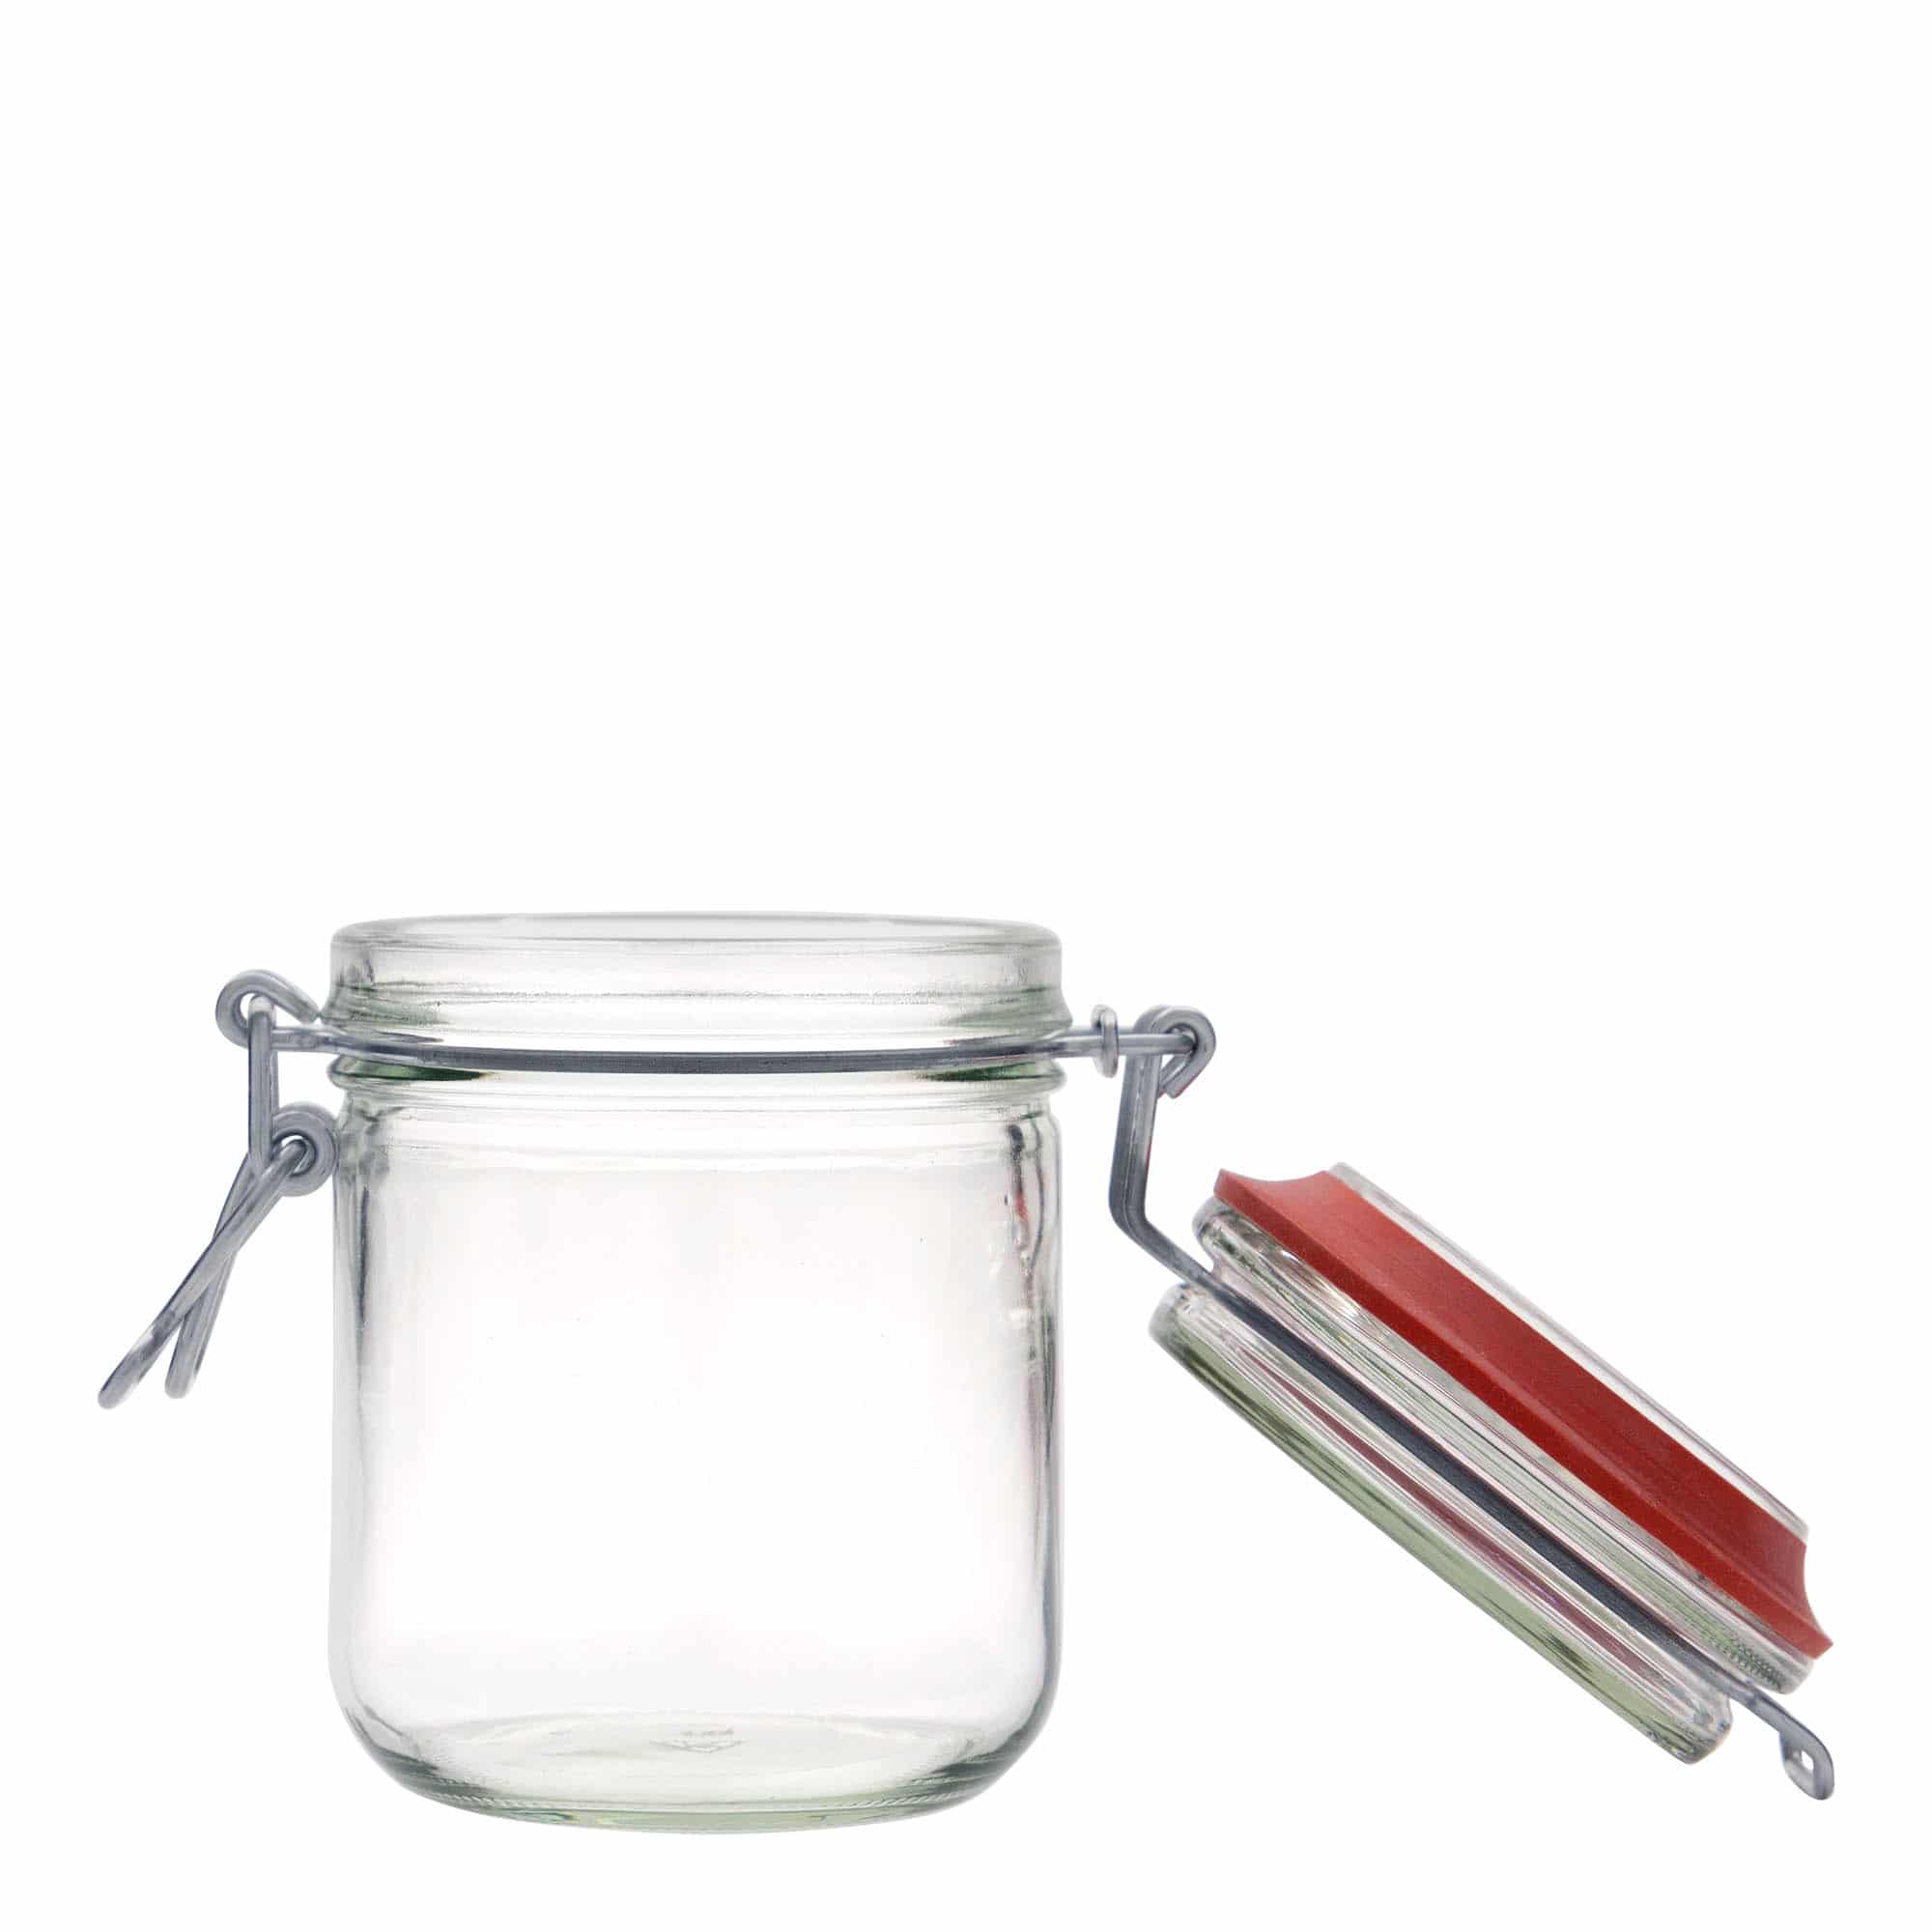 400 ml clip top jar, closure: clip top